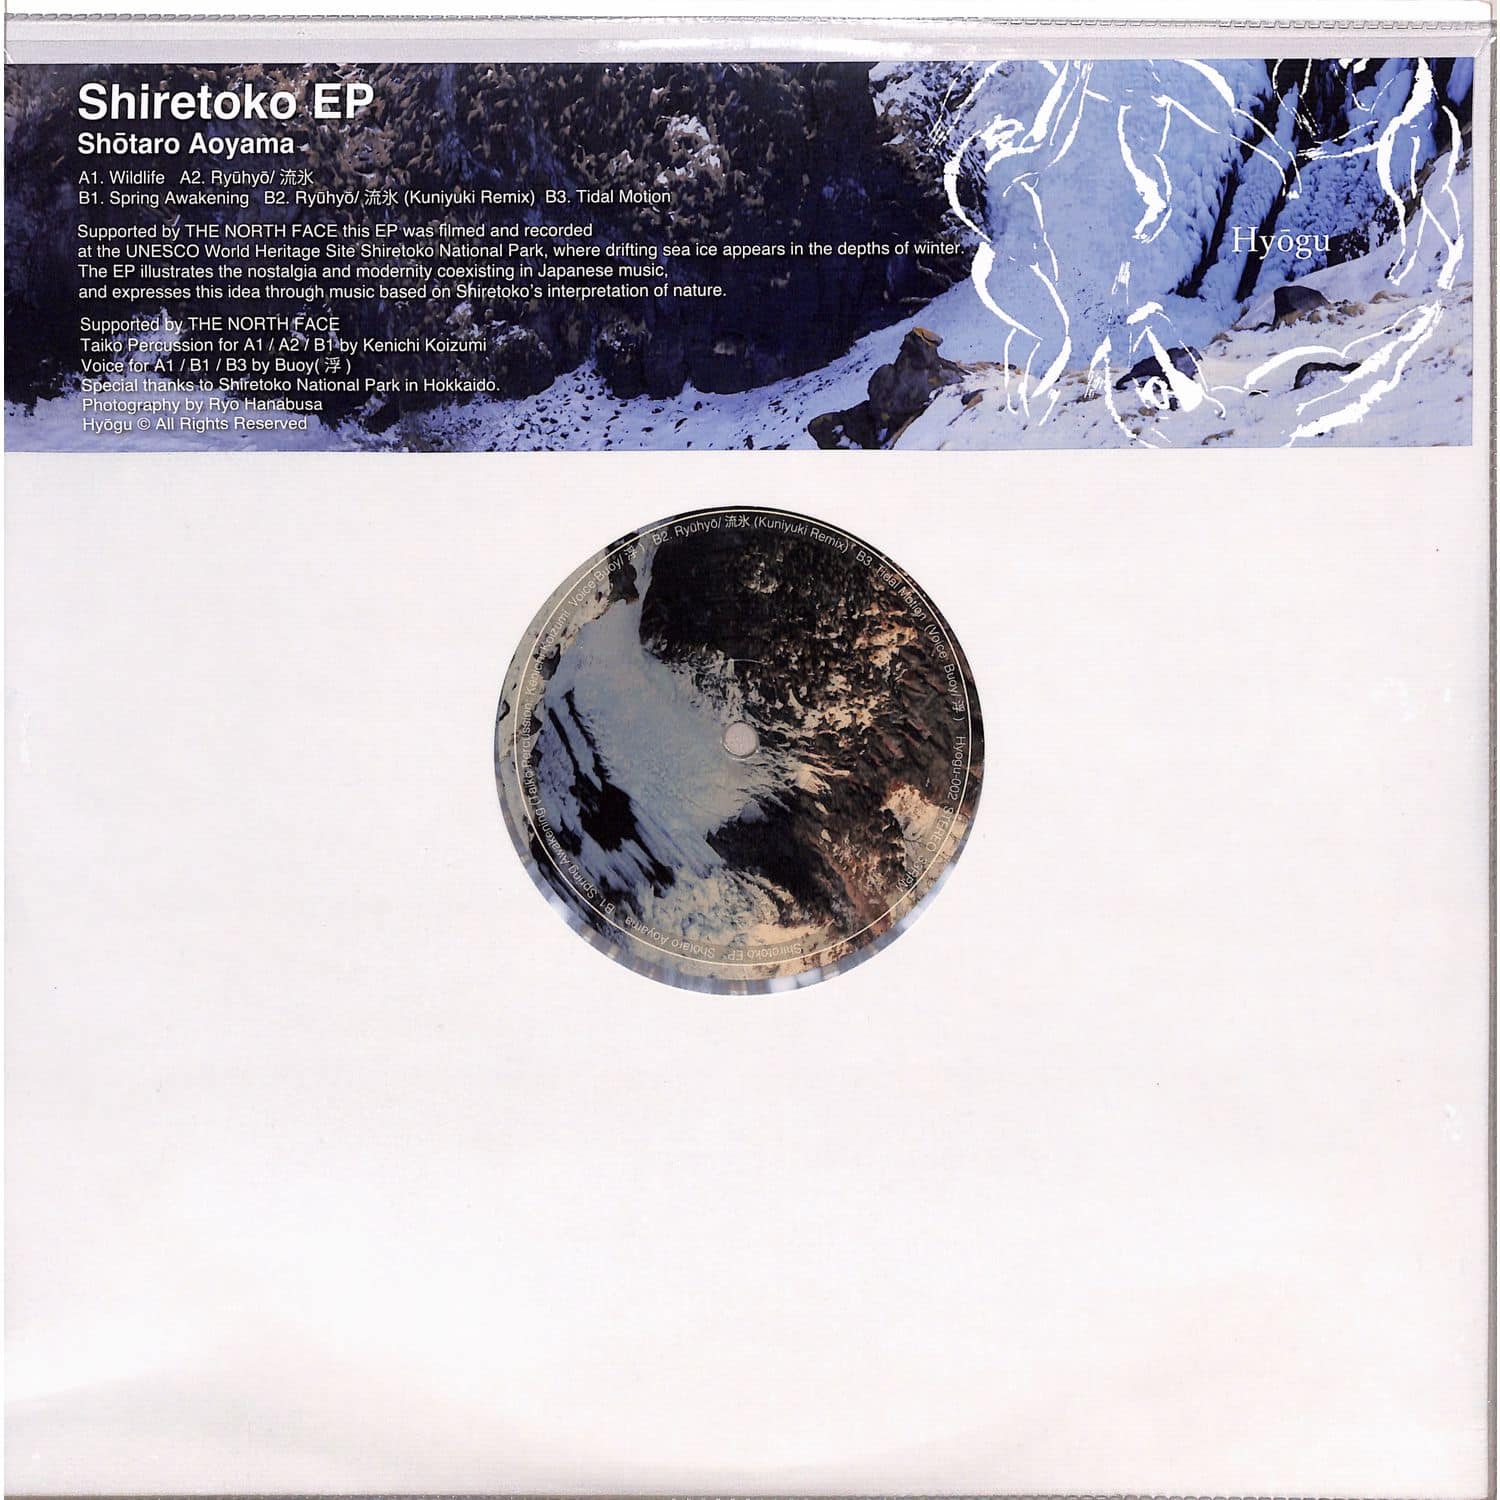 Shotaro Aoyama - SHIRETOKO EP